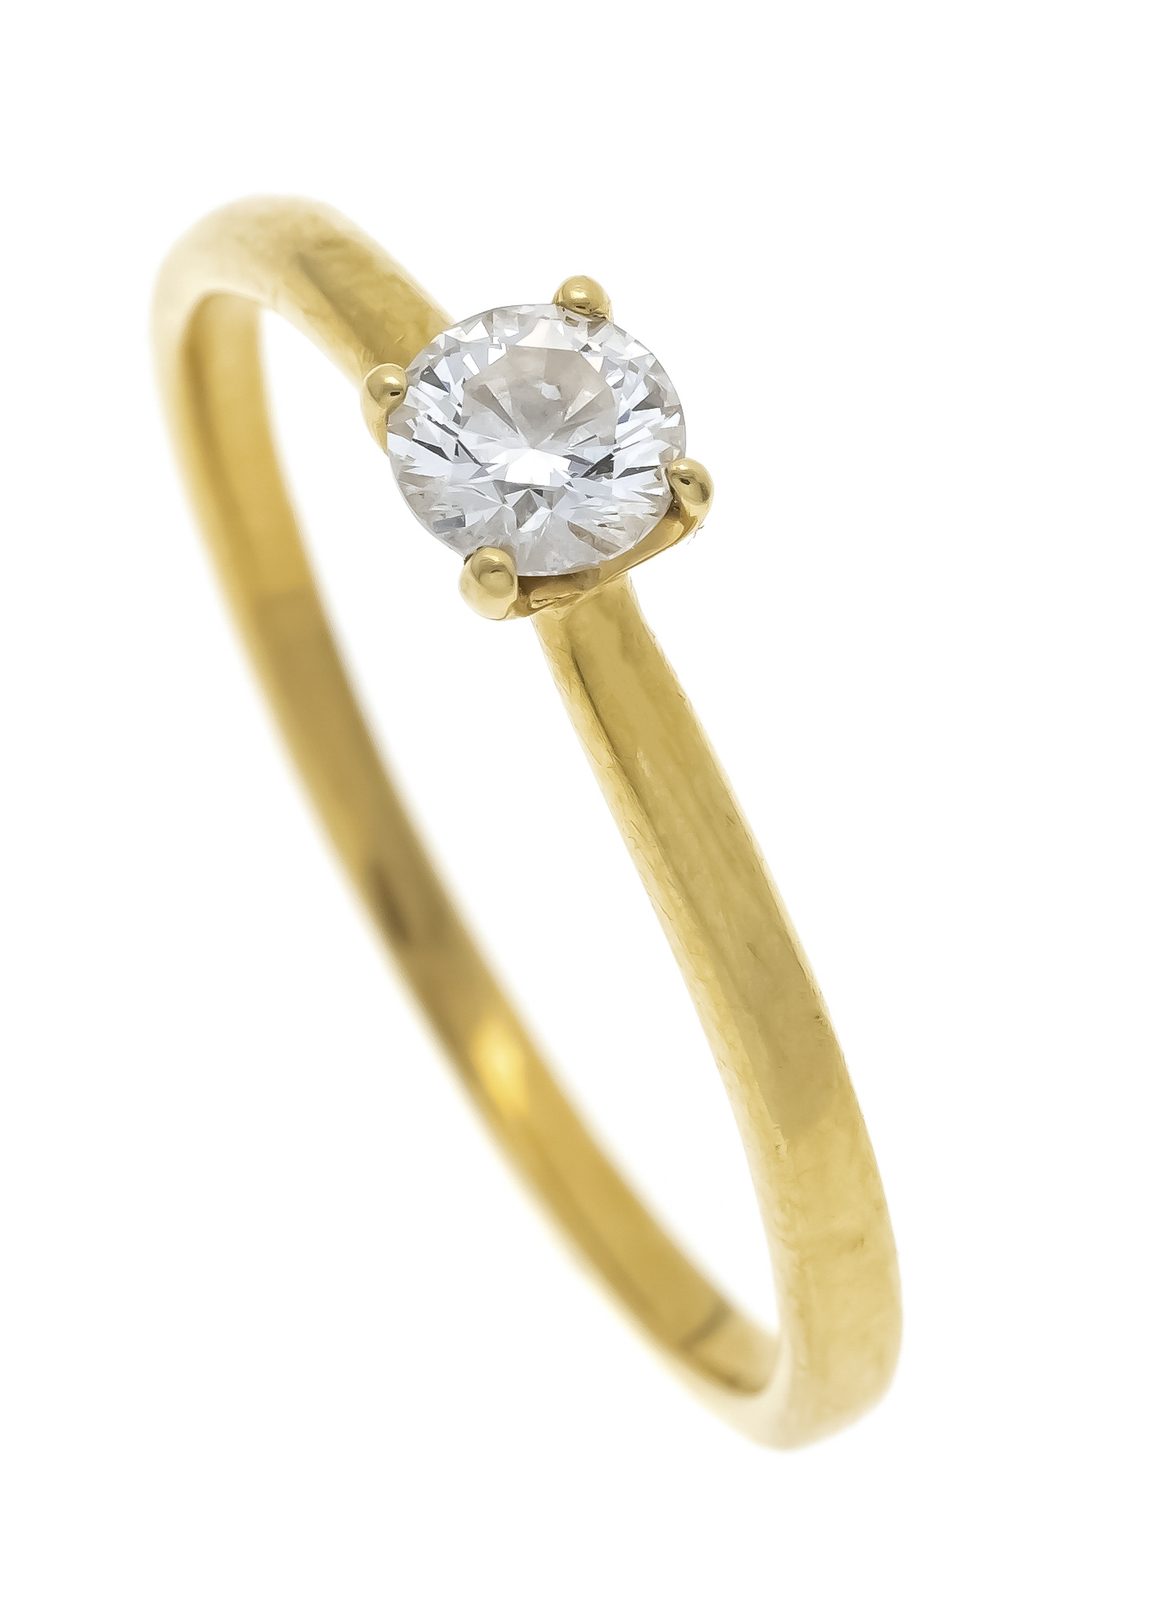 Zlatý prsten se solitérním briliantem, 0,24 ct